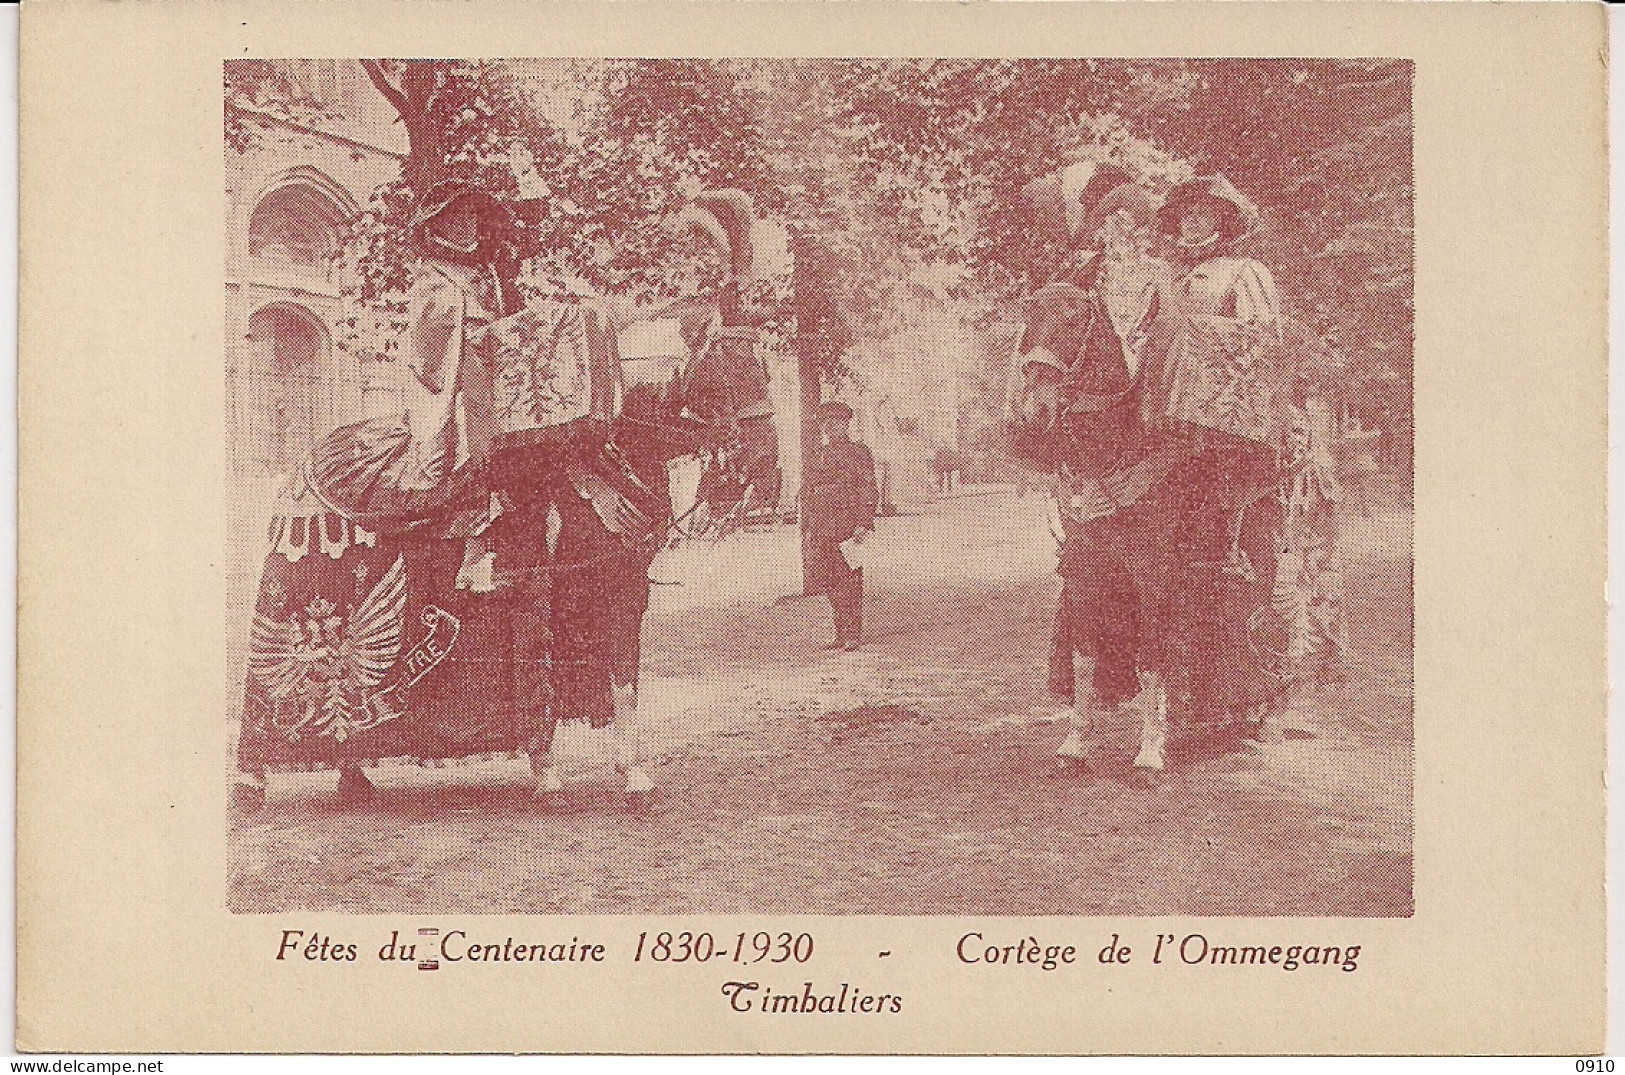 BRUXELLES-BRUSSEL " FETES DU CENTENAIRE 1830-1930-CORTEGE DE L'OMMEGANG-TIBALIERS-PAUKENISTEN" - Feiern, Ereignisse